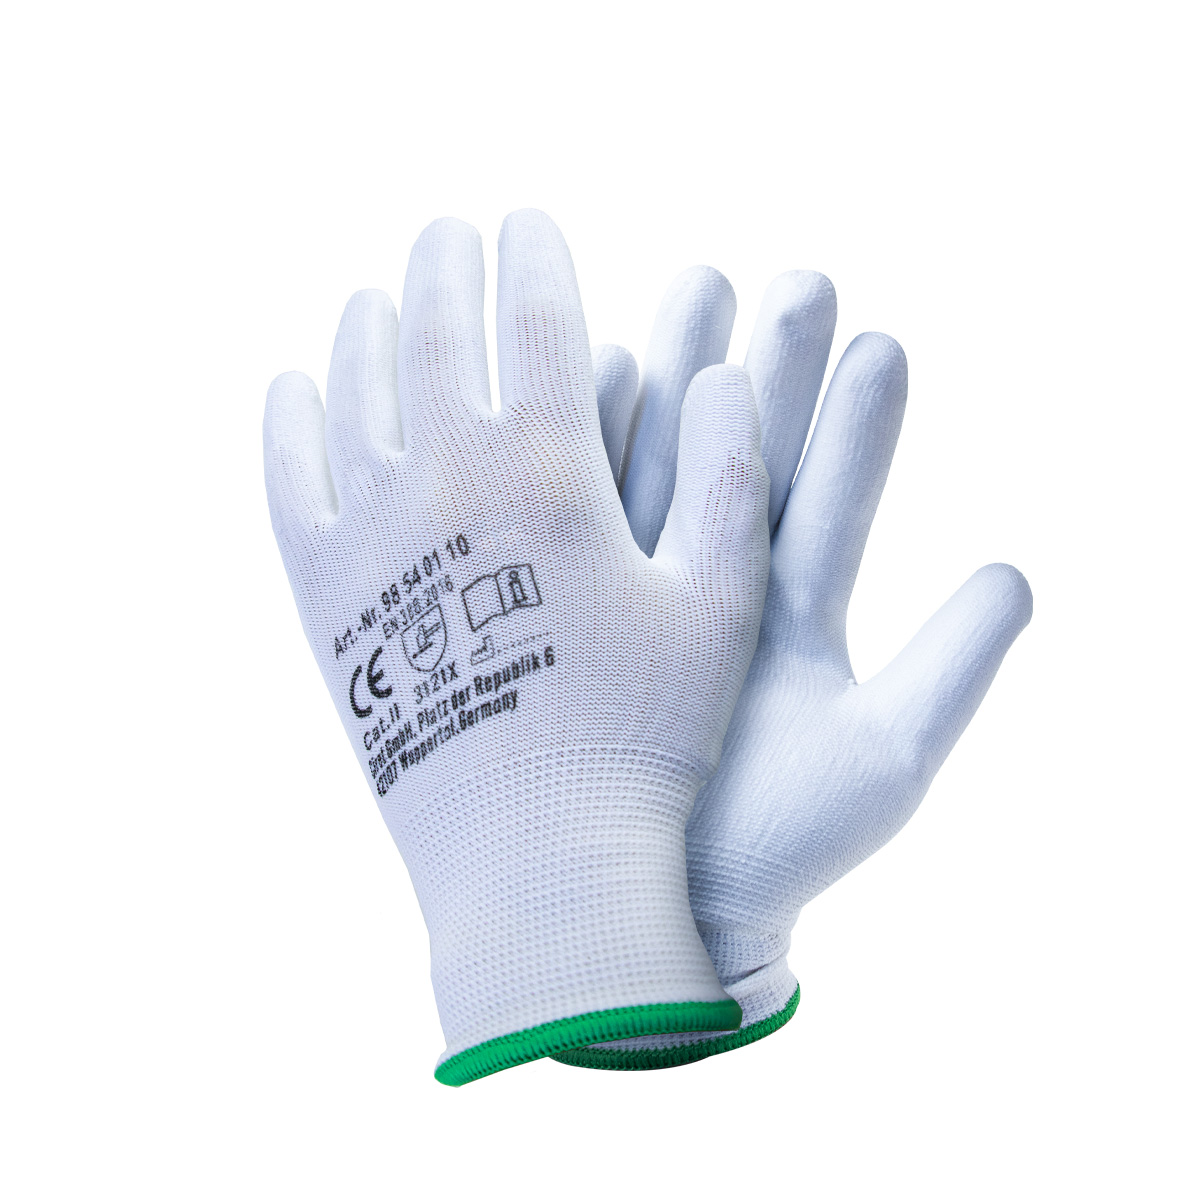 Farbklecks24 Handschuhe SensoGrip Gr. 8 weiß, Malerhandschuhe